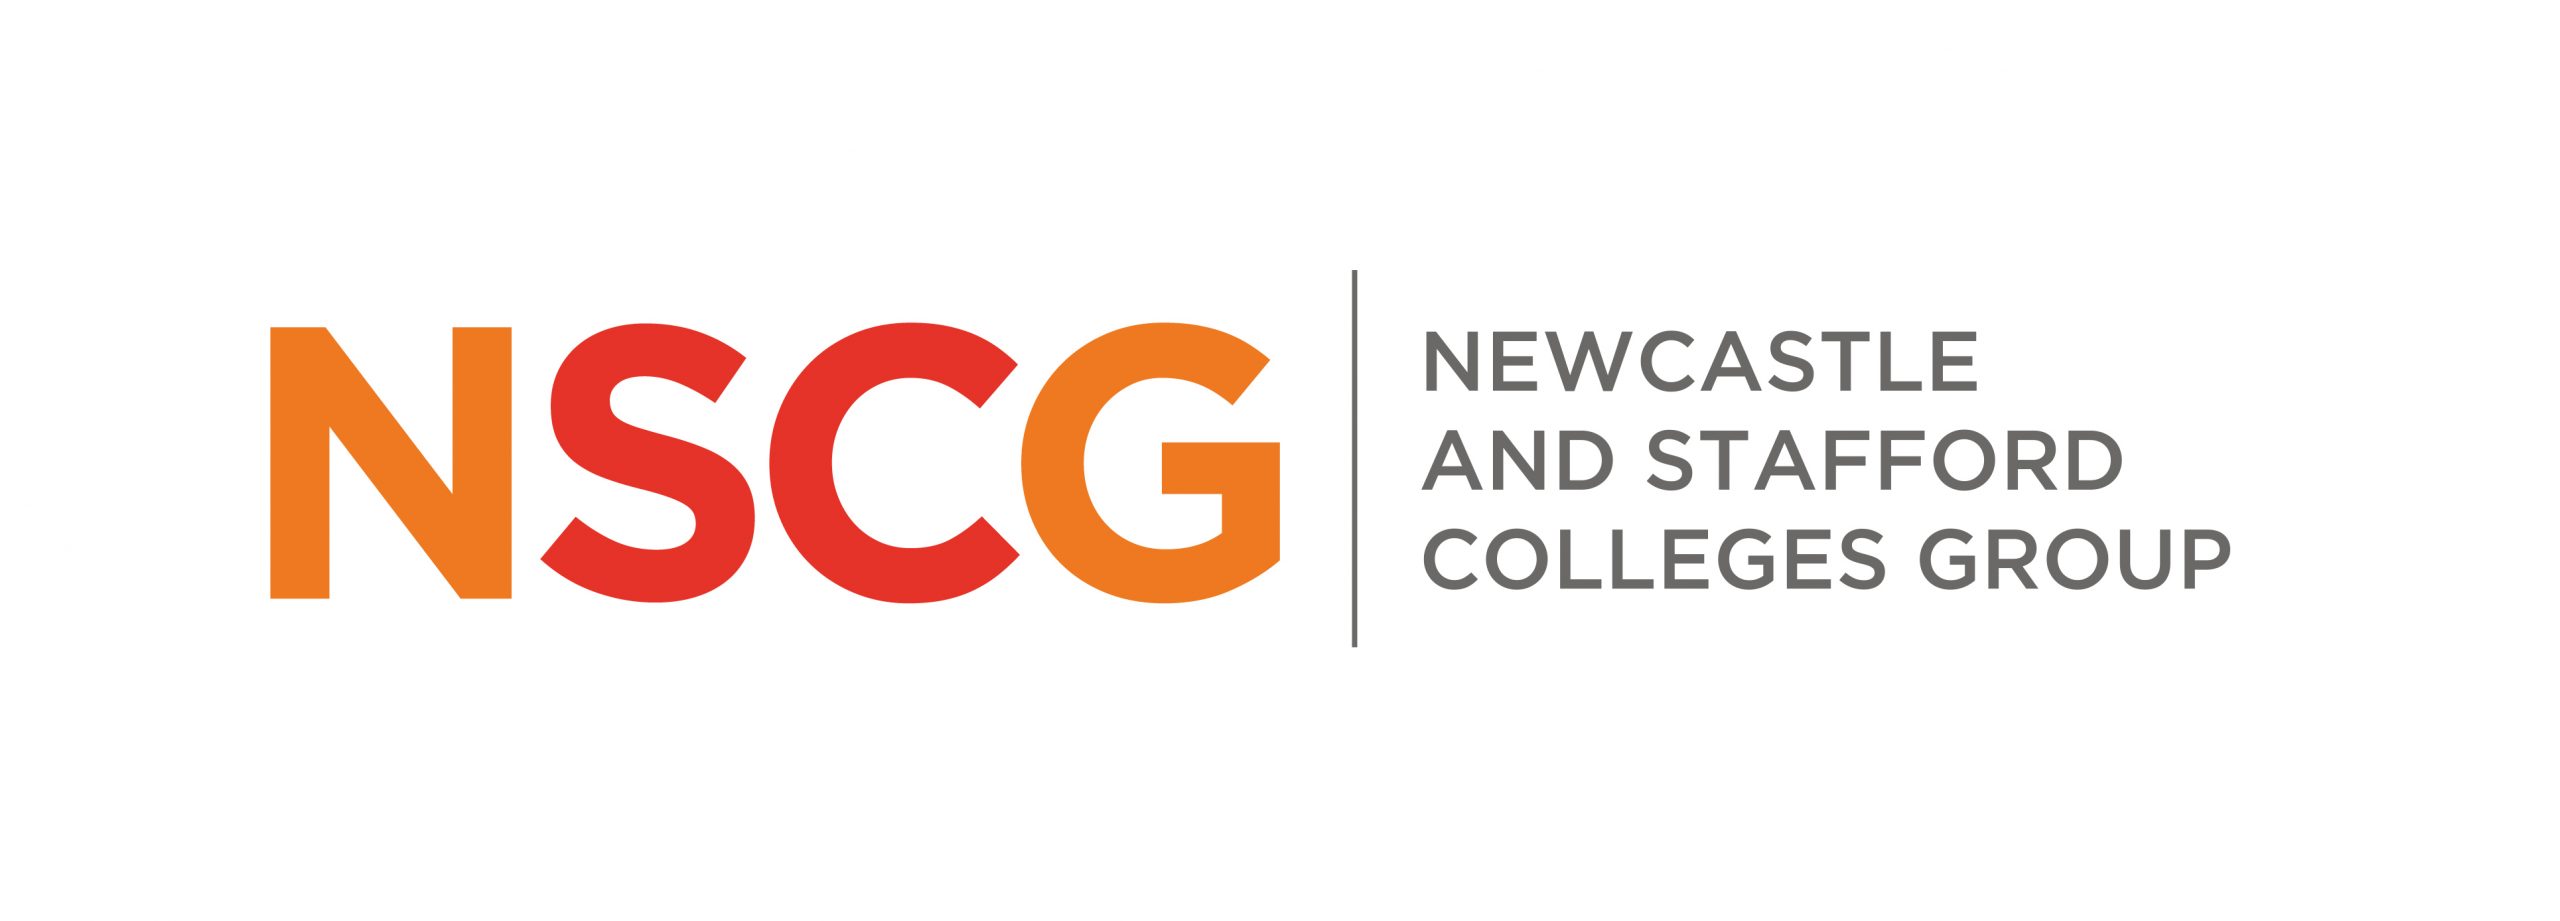 NSCG logo.